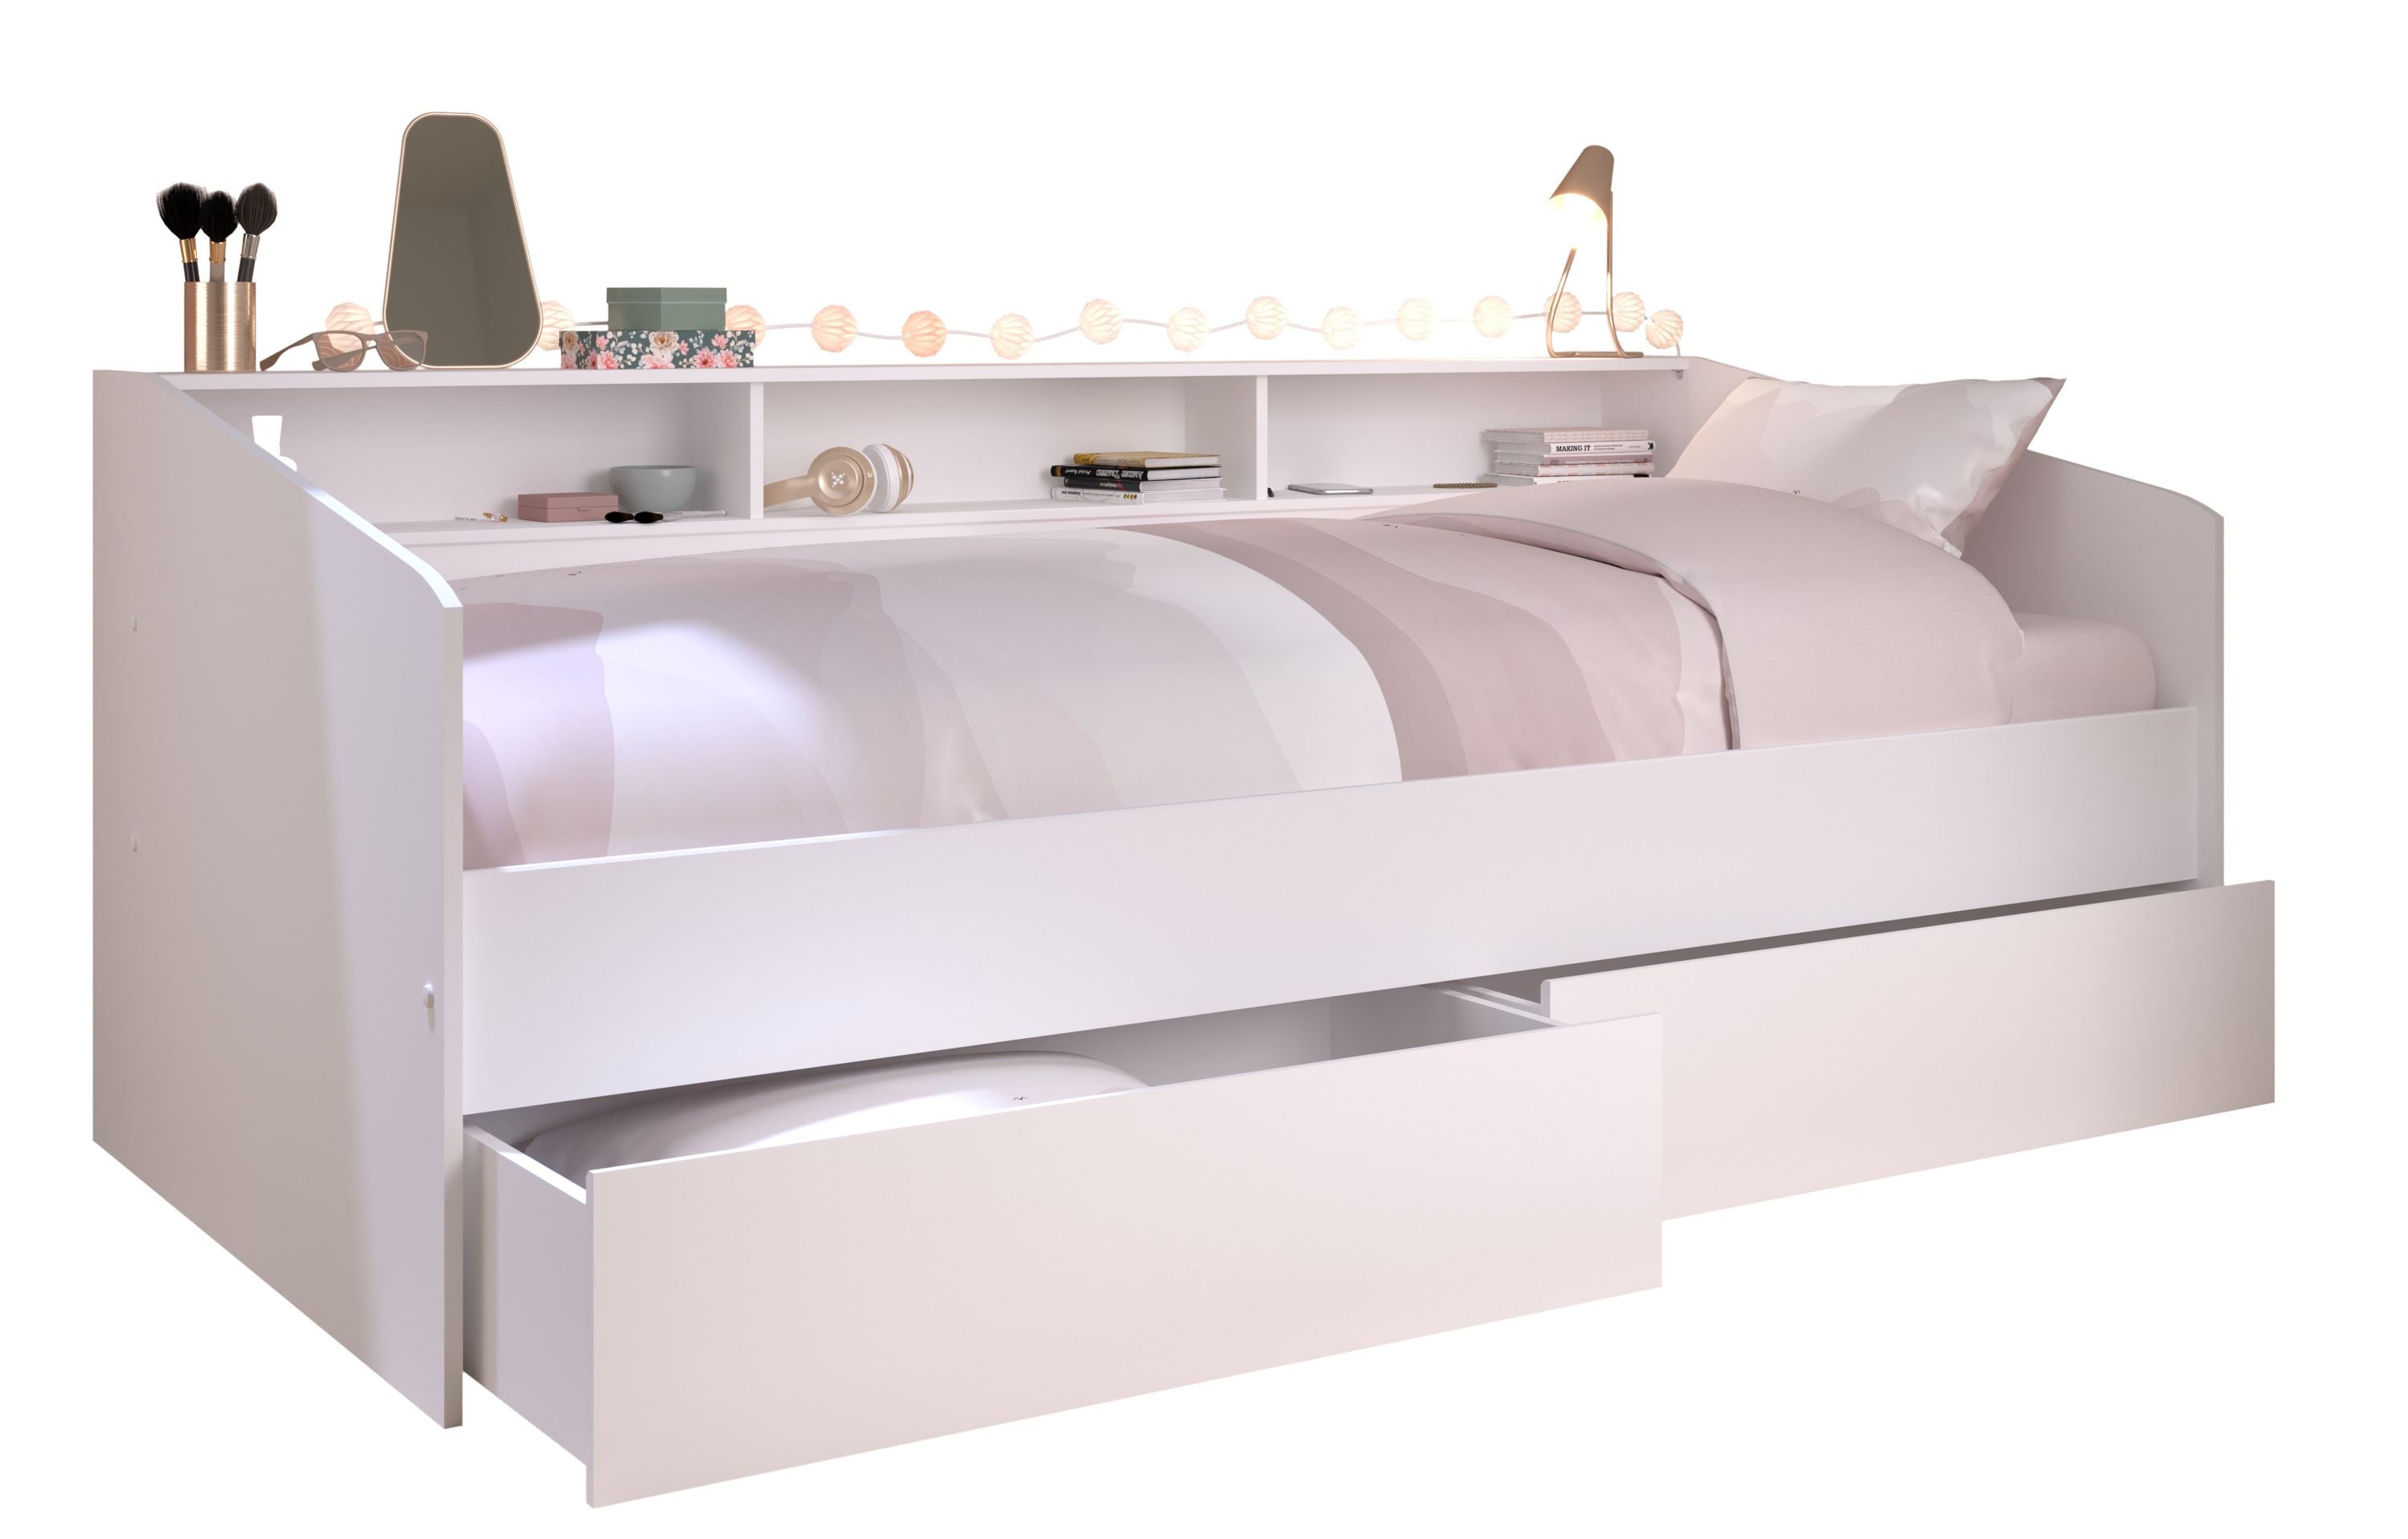 Funktionsbett Sleep Parisot inkl. 2 Bettschubkästen Regal Jugendbett Bettliege Bett weiß 90*200 cm